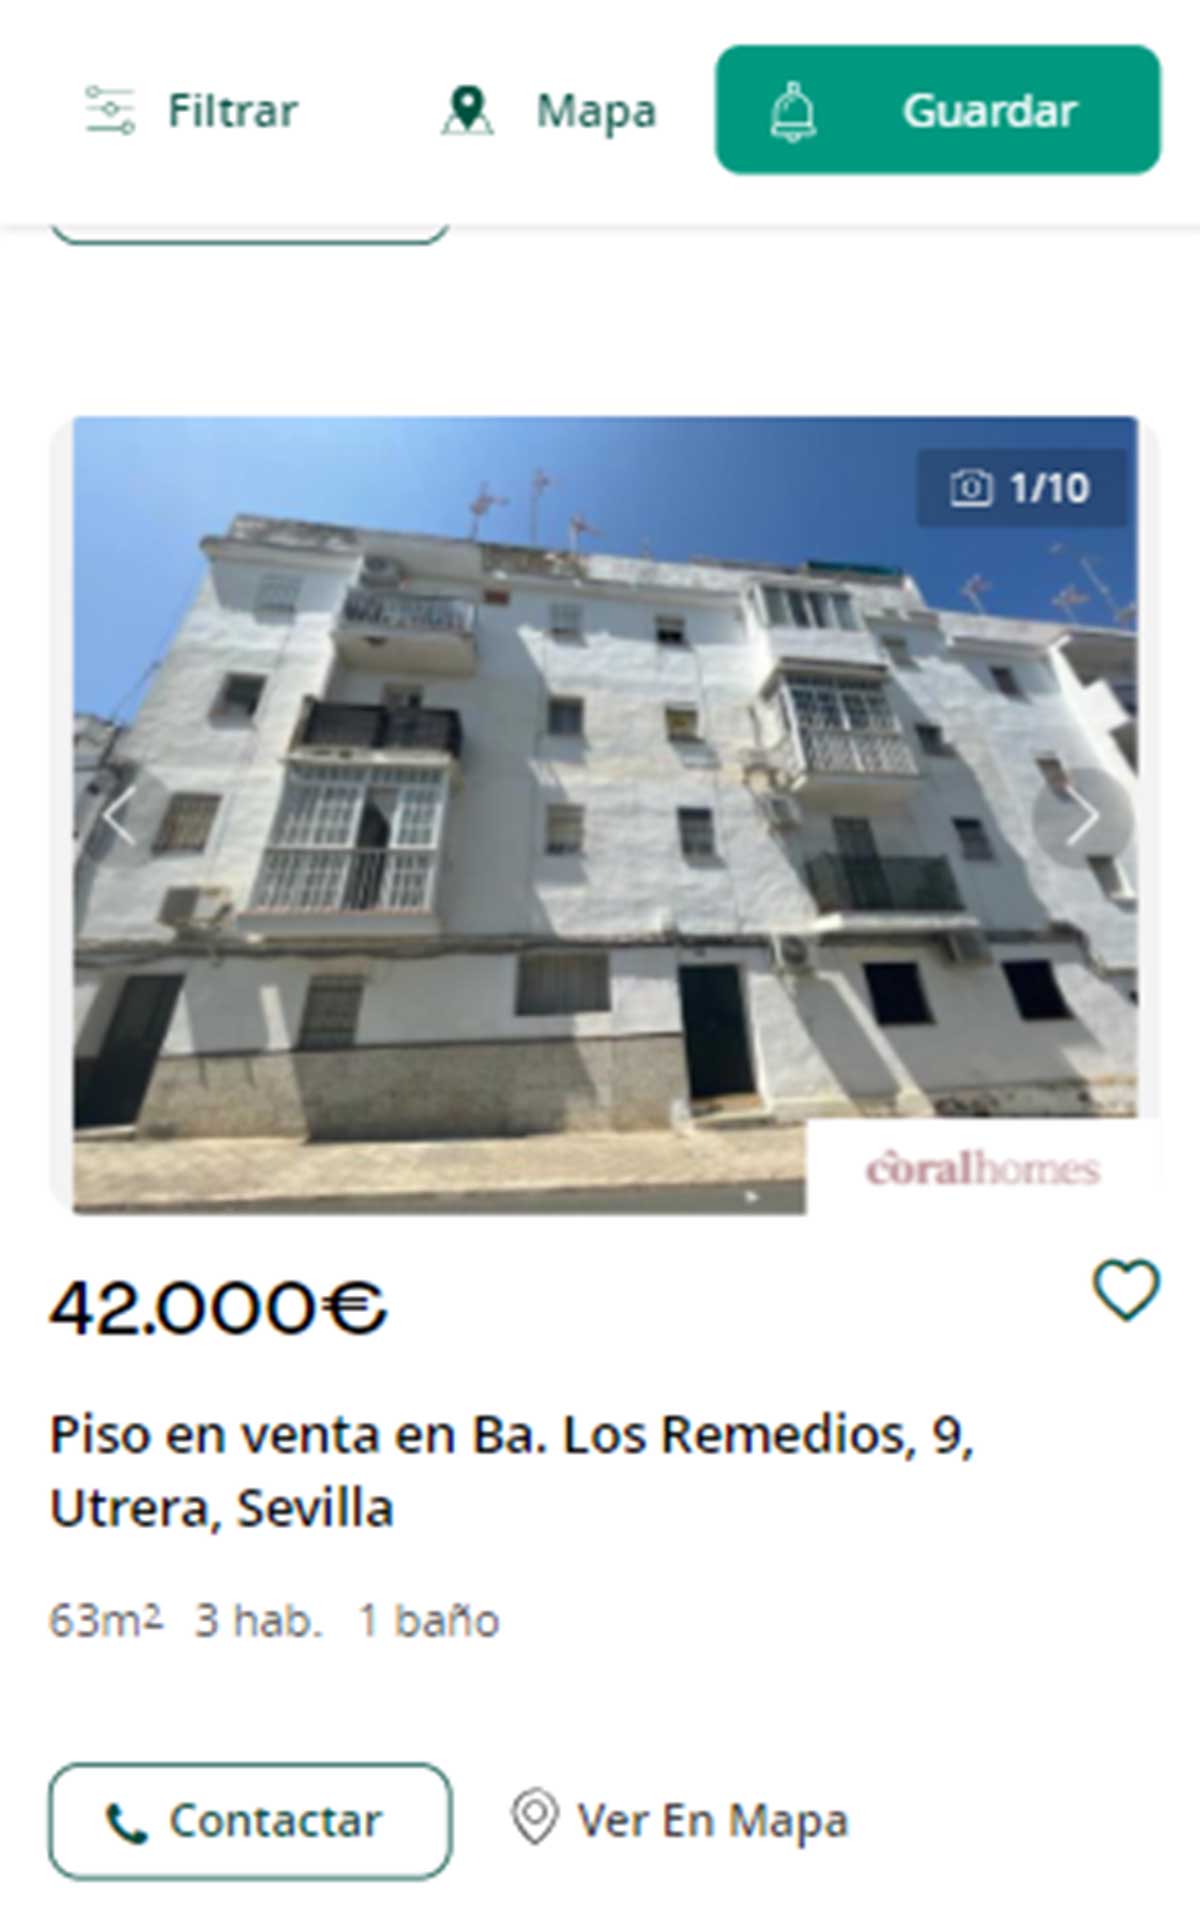 Piso en Sevilla por 42.000 euros